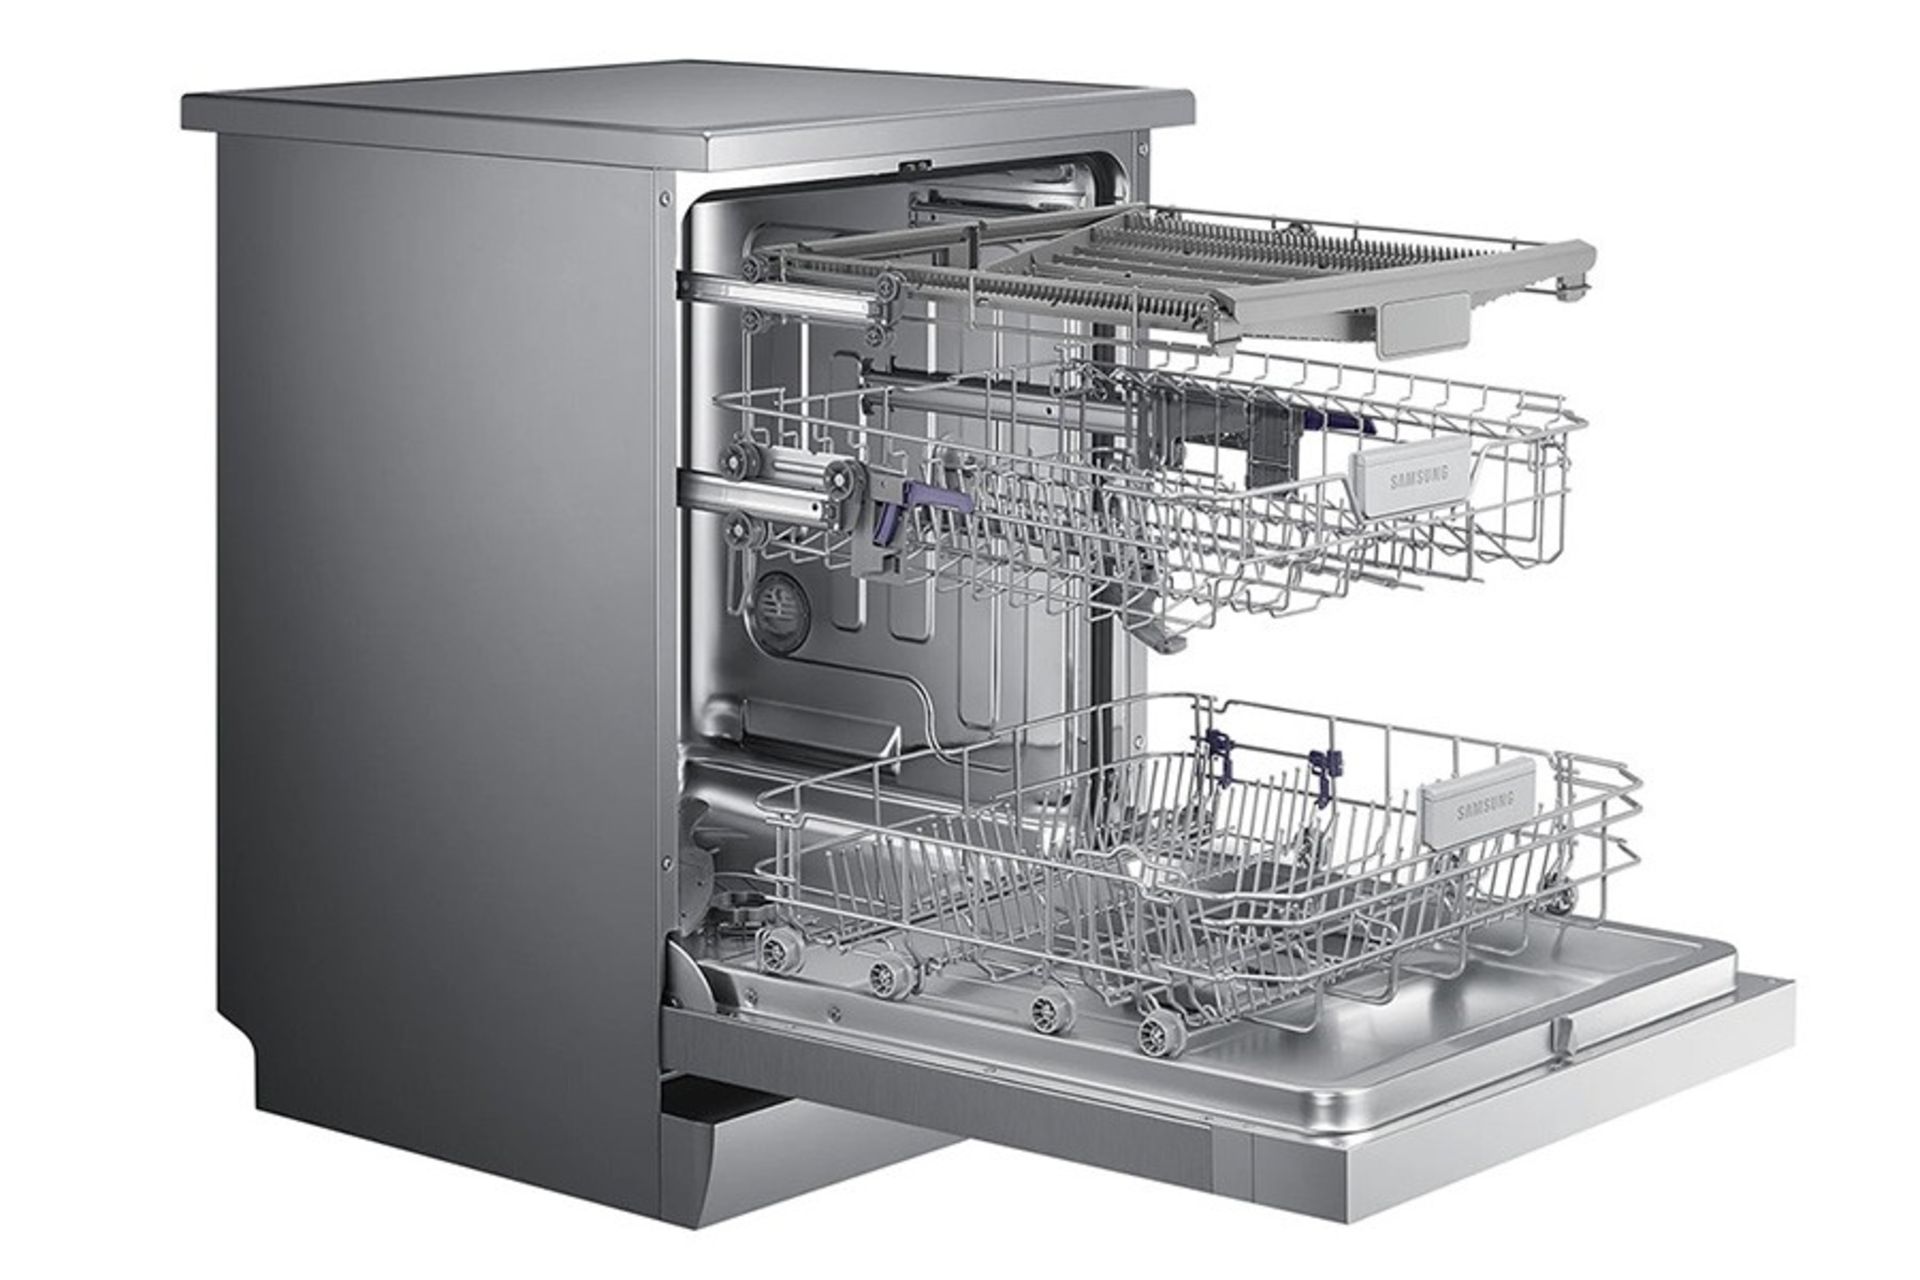 قیمت ماشین ظرفشویی سامسونگ DW60M5070 در بخش محصولات زومیت